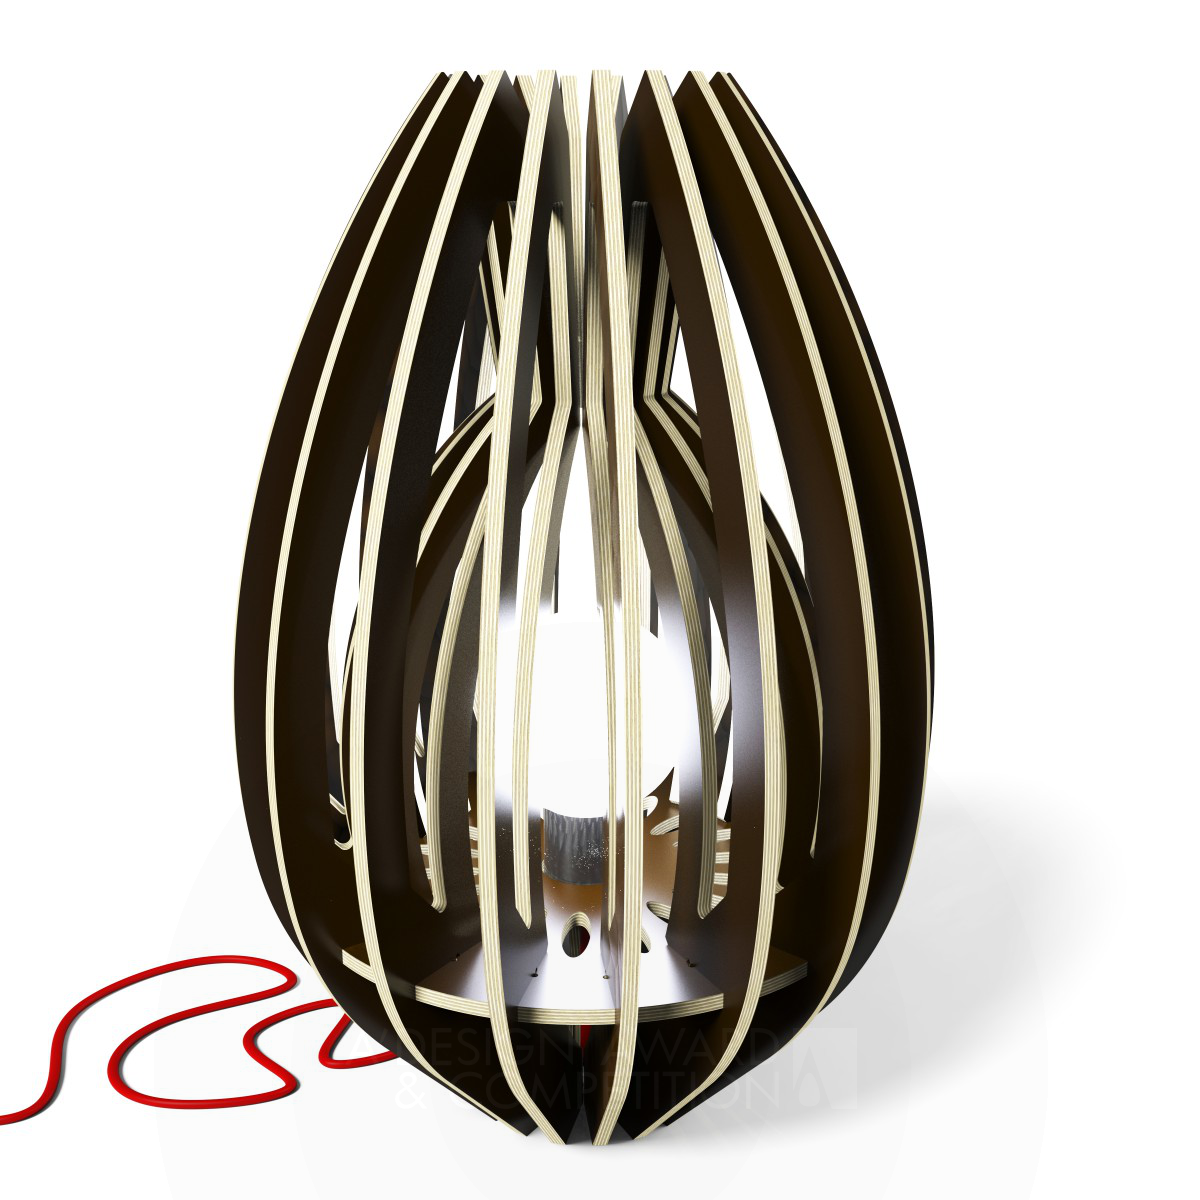 Calyx 48 Lamp by Osmose le bois Sas